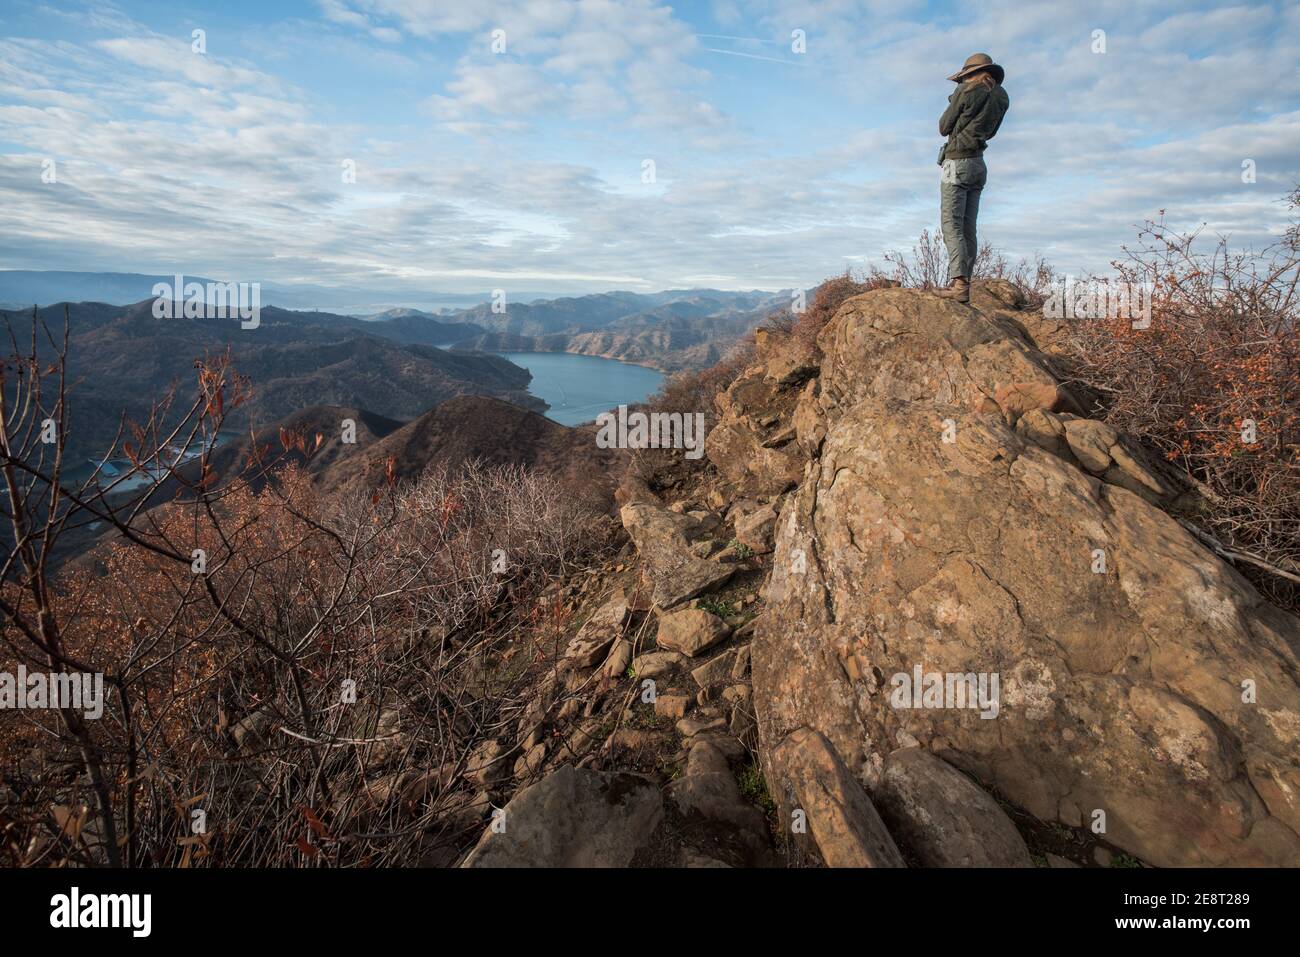 Un escursionista femminile si ferma in cima ad alcune rocce per ammirare una valle e un lago sotto nella natura selvaggia della California. Foto Stock